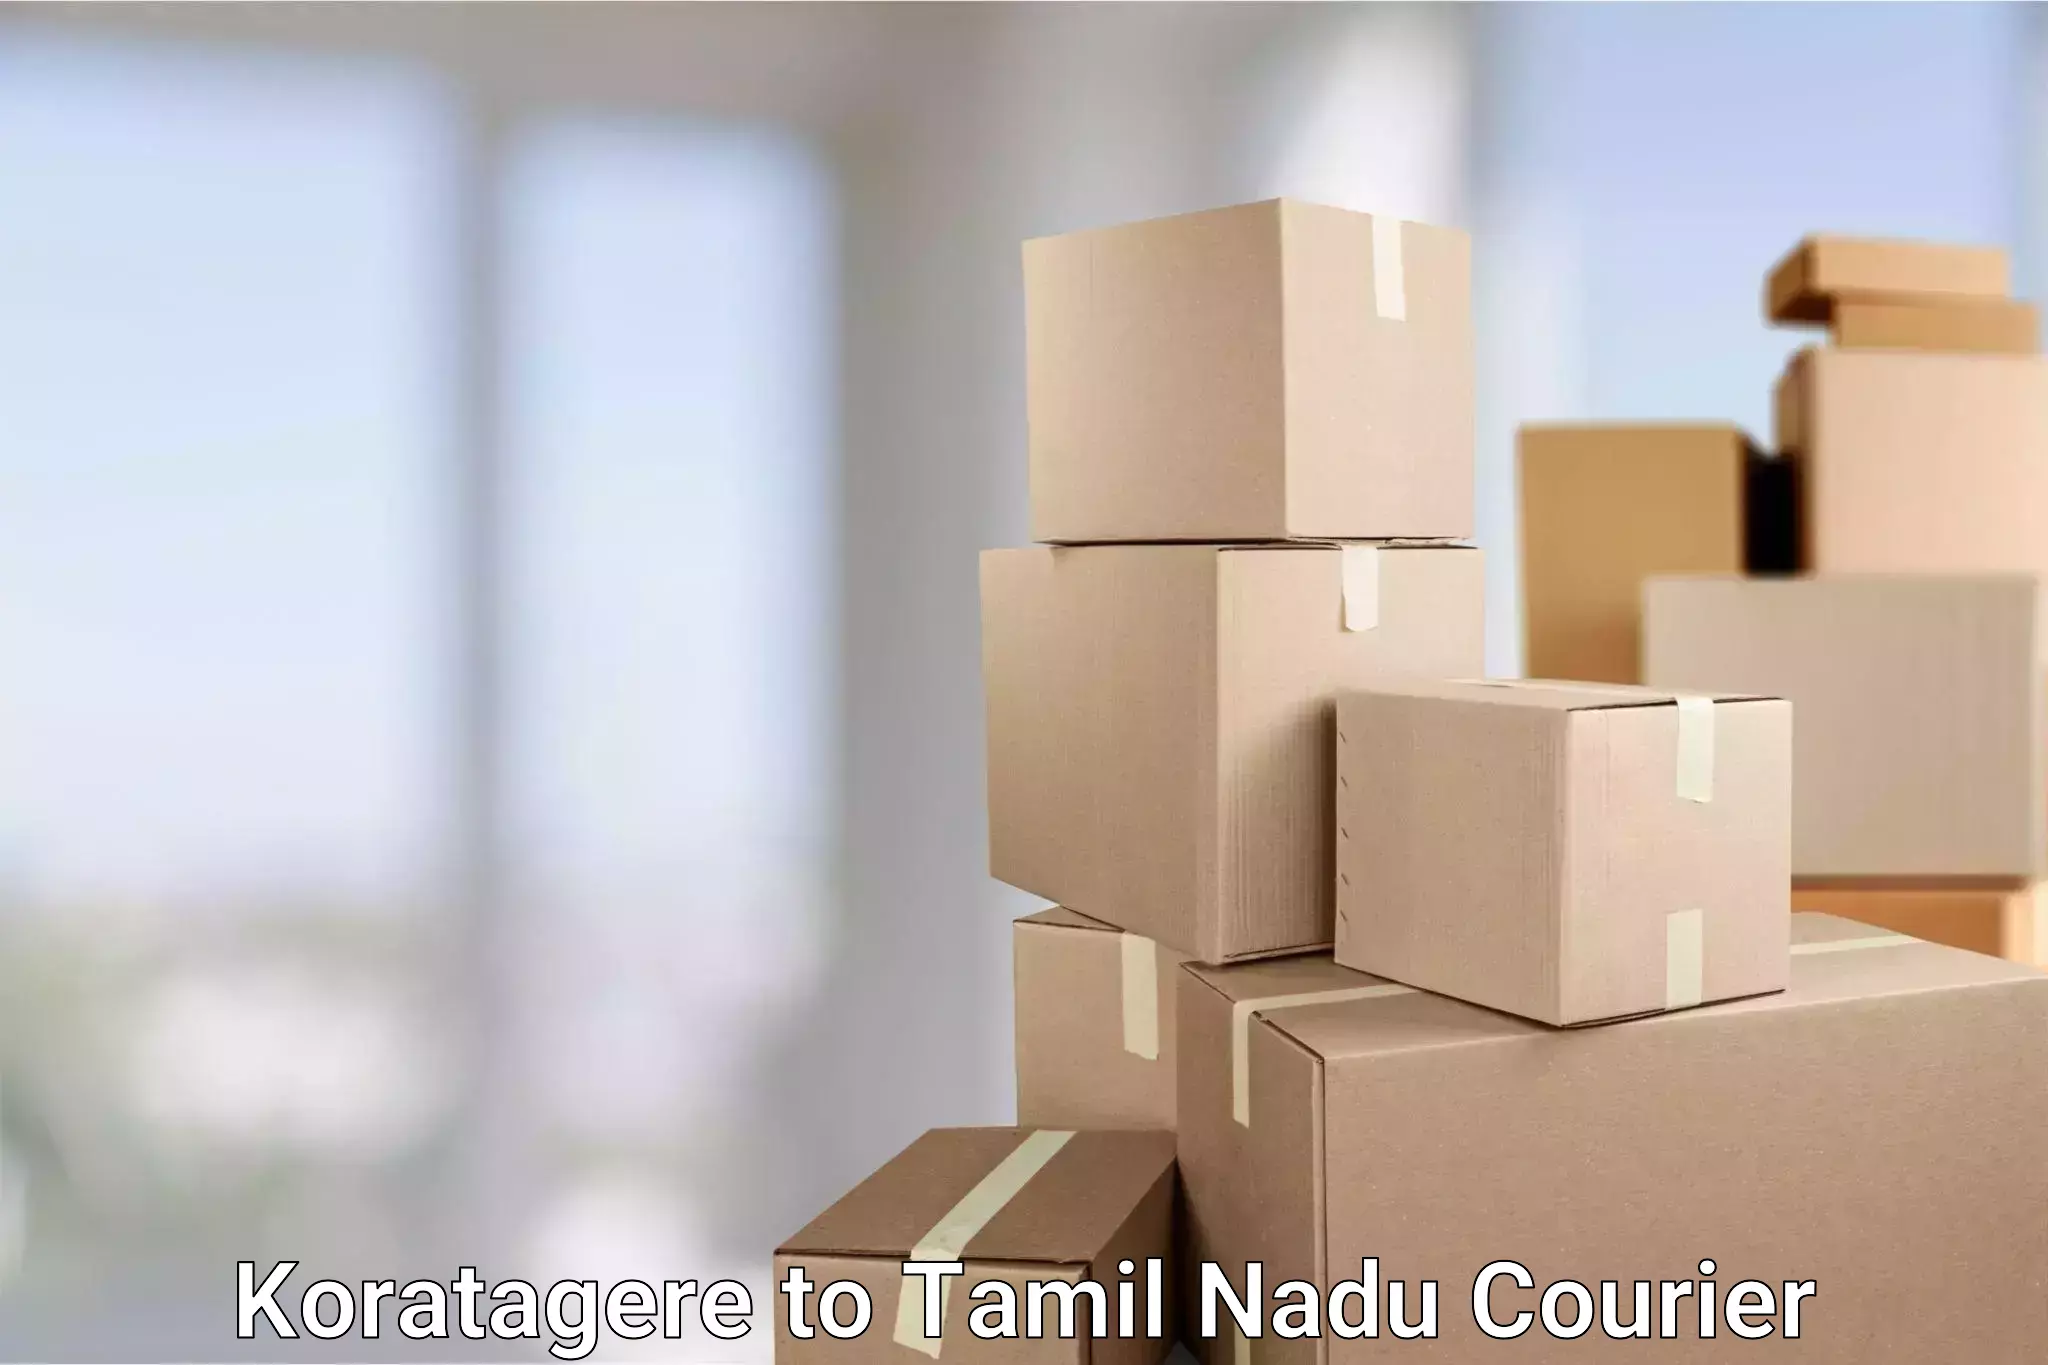 Fastest parcel delivery Koratagere to Tamil Nadu